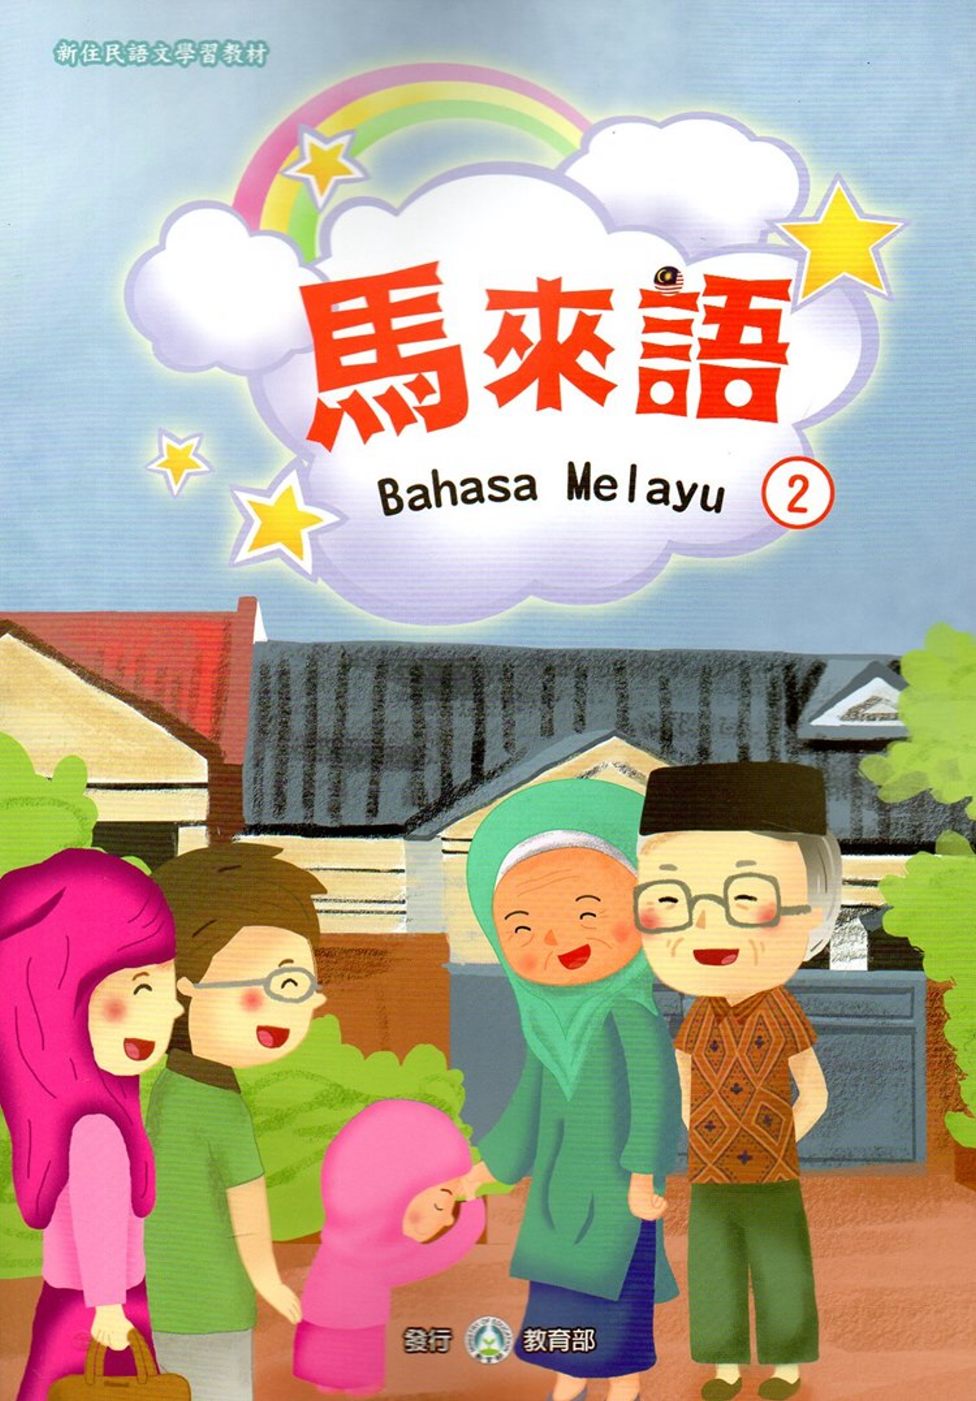 新住民語文學習教材馬來語第2冊